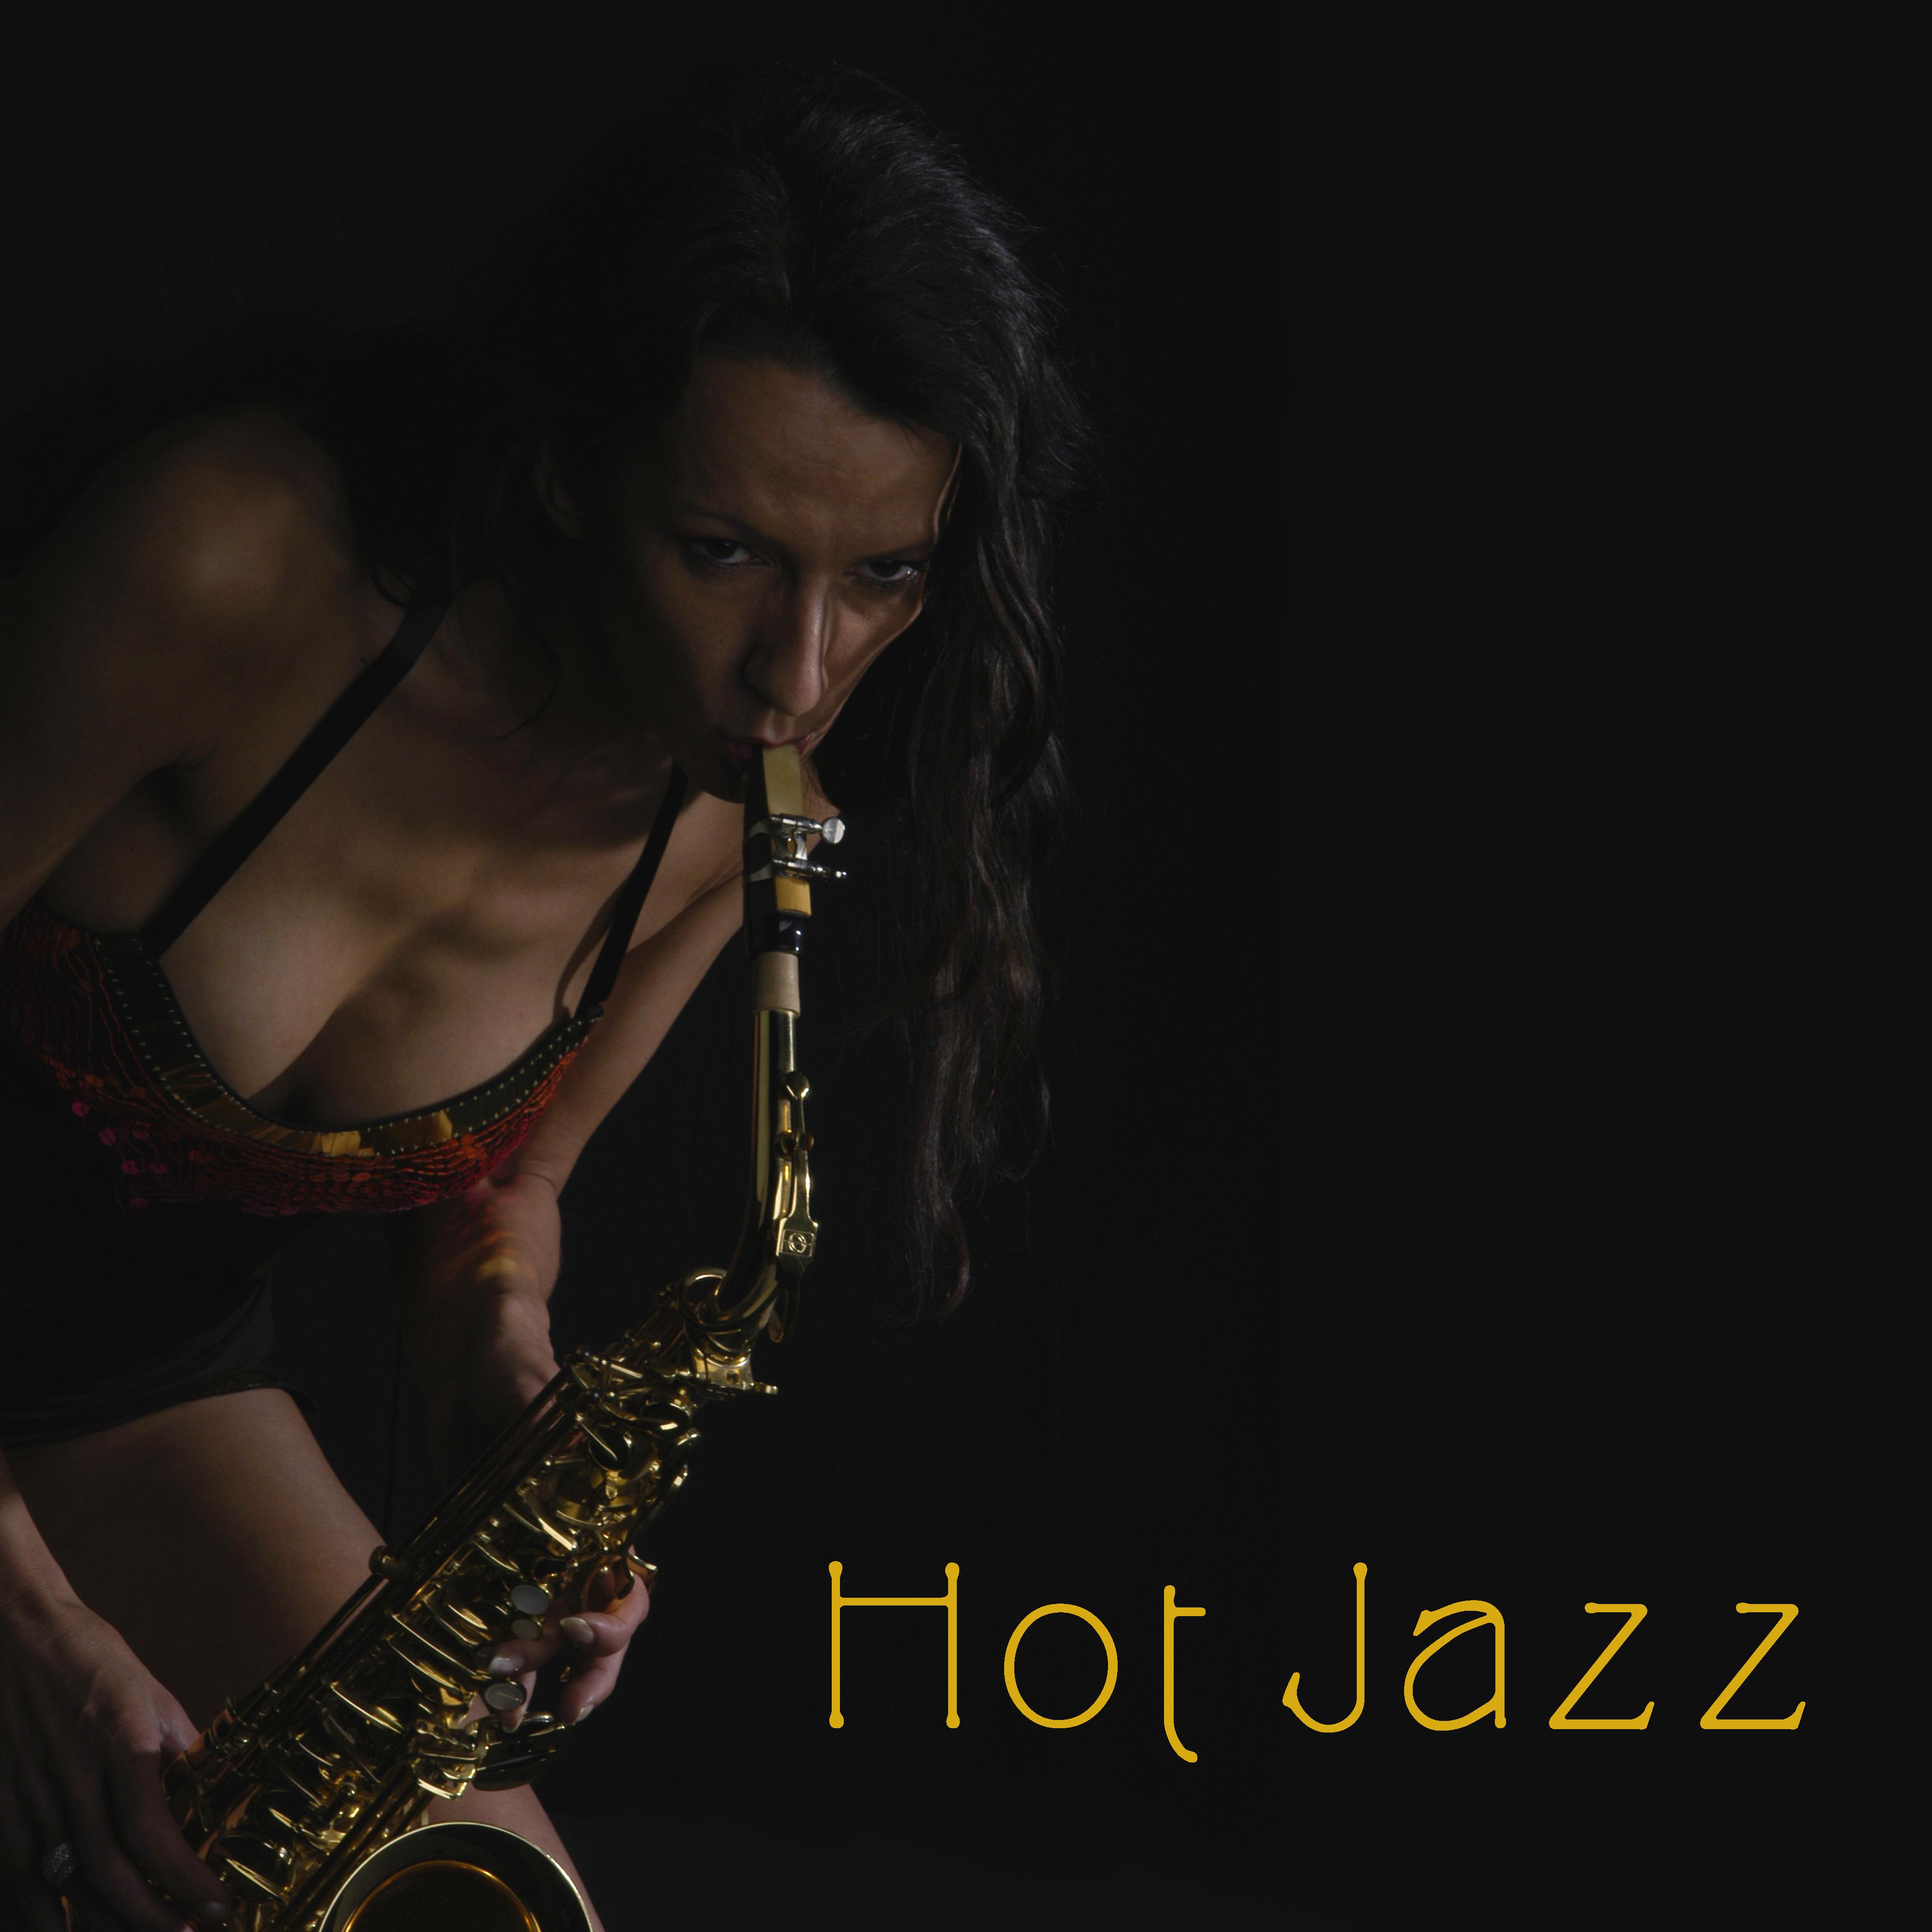 Hot Jazz – Sensual Music at Night, Erotic Lounge, Jazz for Two, **** Saxophone, Making Love